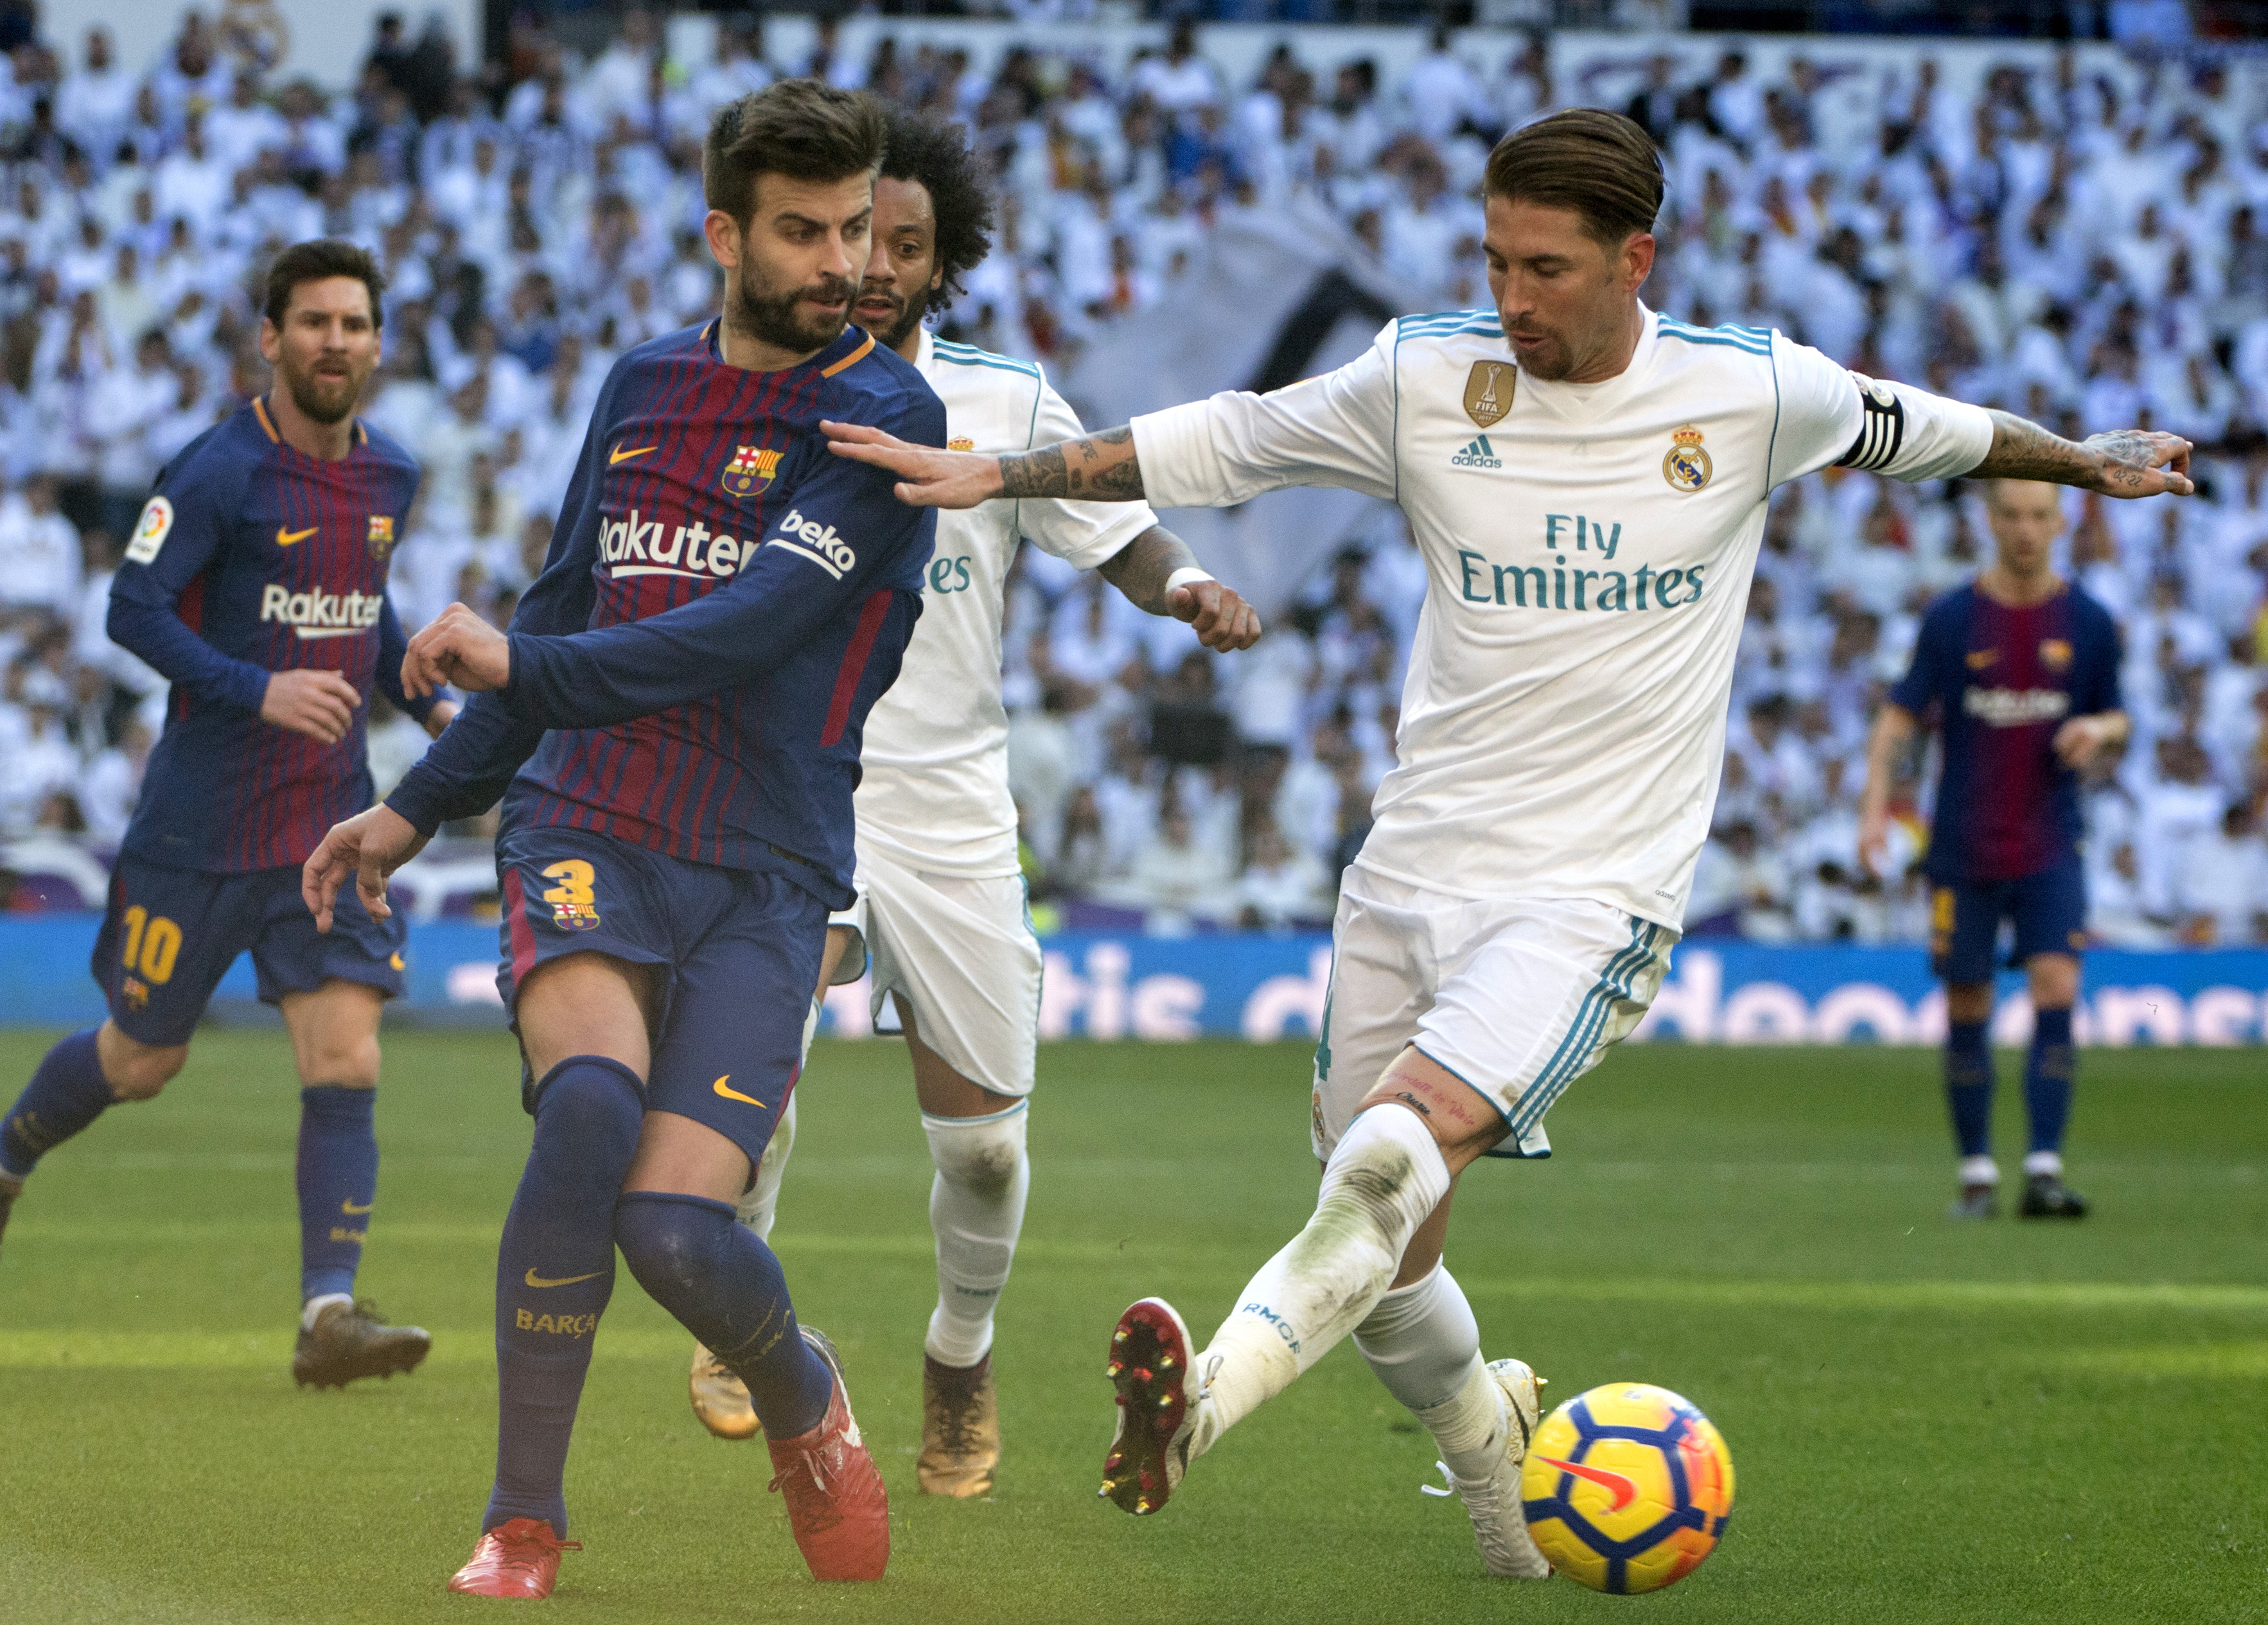 El Clásico Barcelona vs. Real Madrid, horario y canales de TV La Opinión